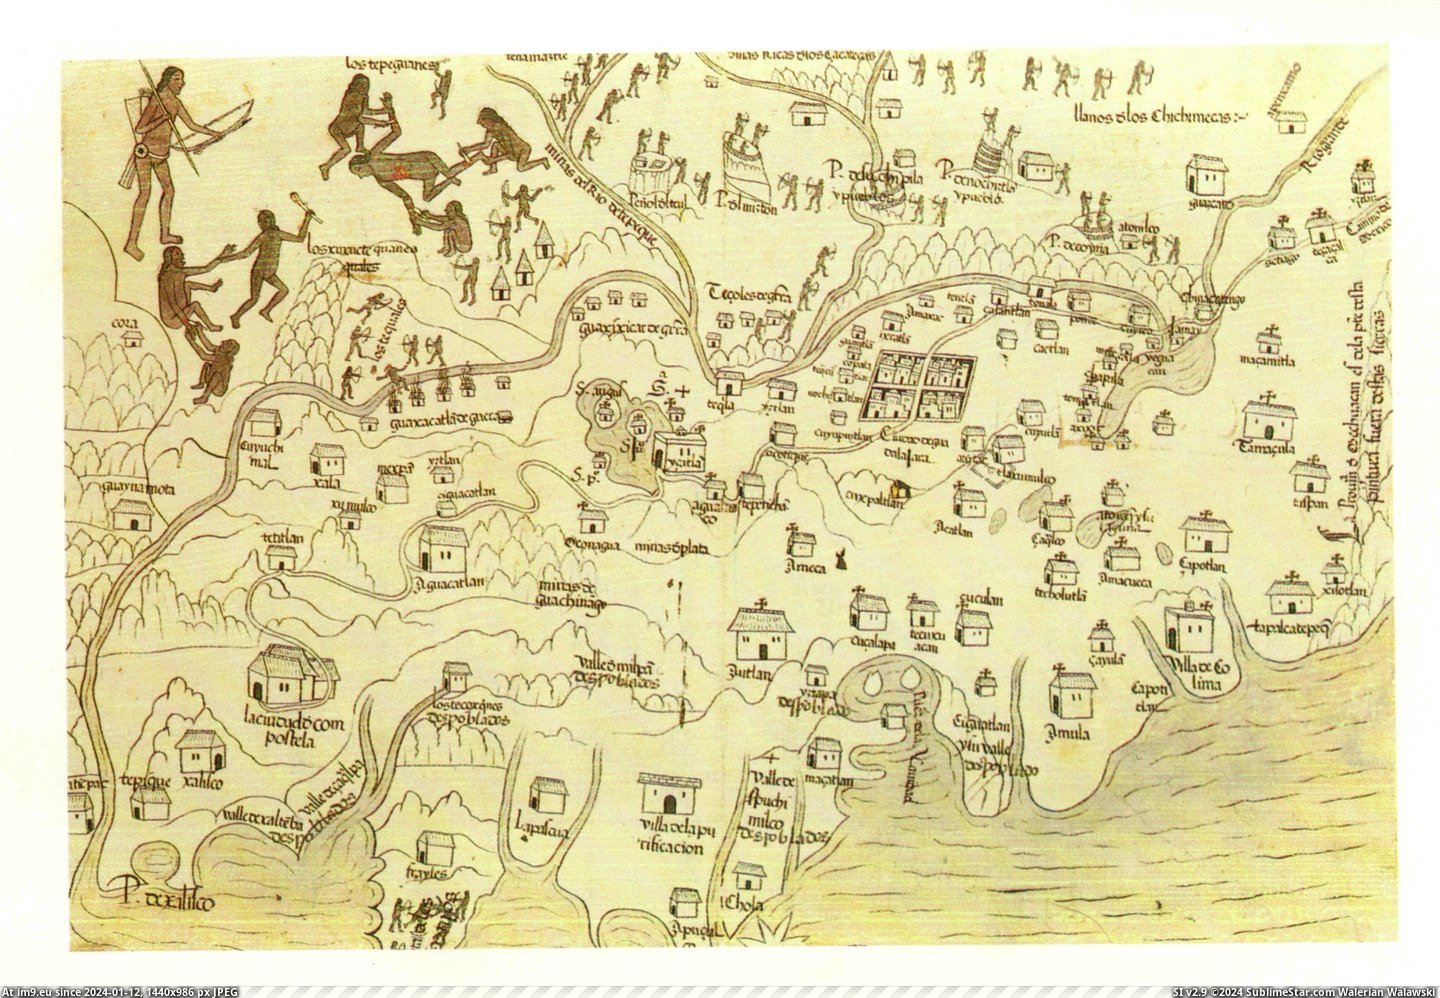 #Map #Building #Cross #Galicia #Nueva #Uprising #Shortly #Natives #Denotes [Mapporn] Map of Nueva Galicia in 1540 shortly after the uprising of natives. Each building with a cross on it denotes where the Pic. (Изображение из альбом My r/MAPS favs))